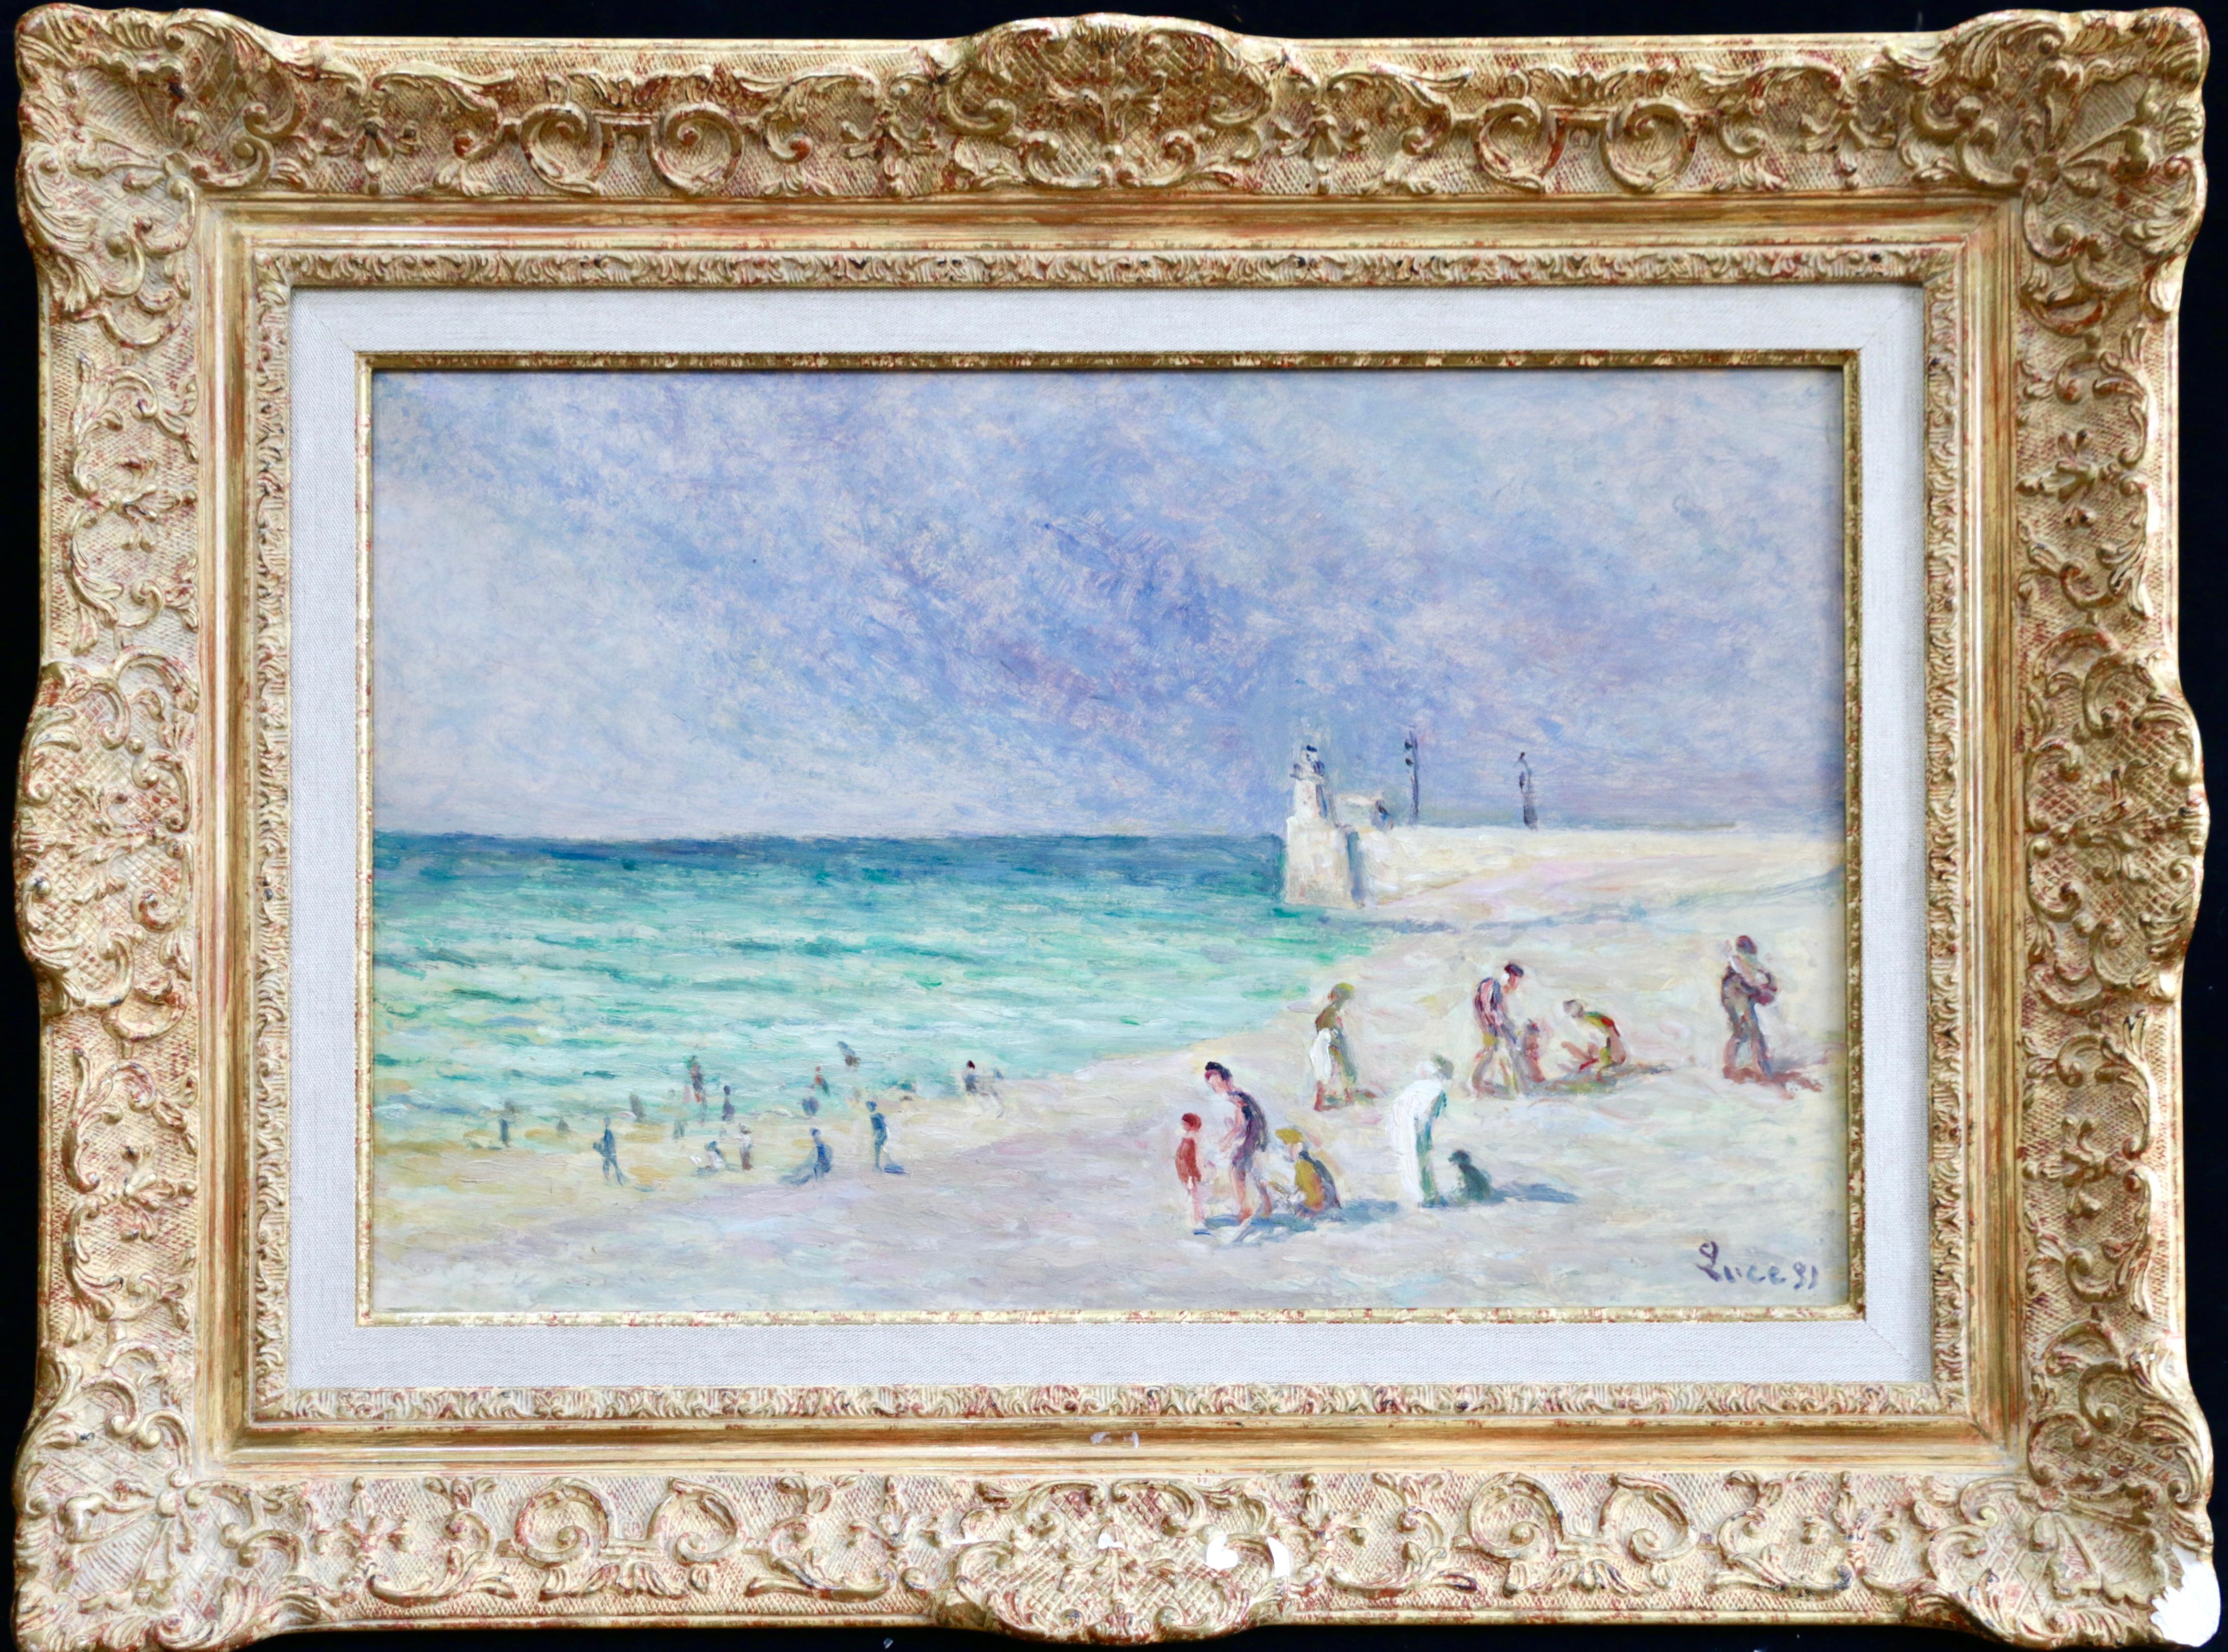 Maximilien Luce Landscape Painting - Figures on Beach - Treport - 20th Century Oil, Coastal Landscape by M Luce